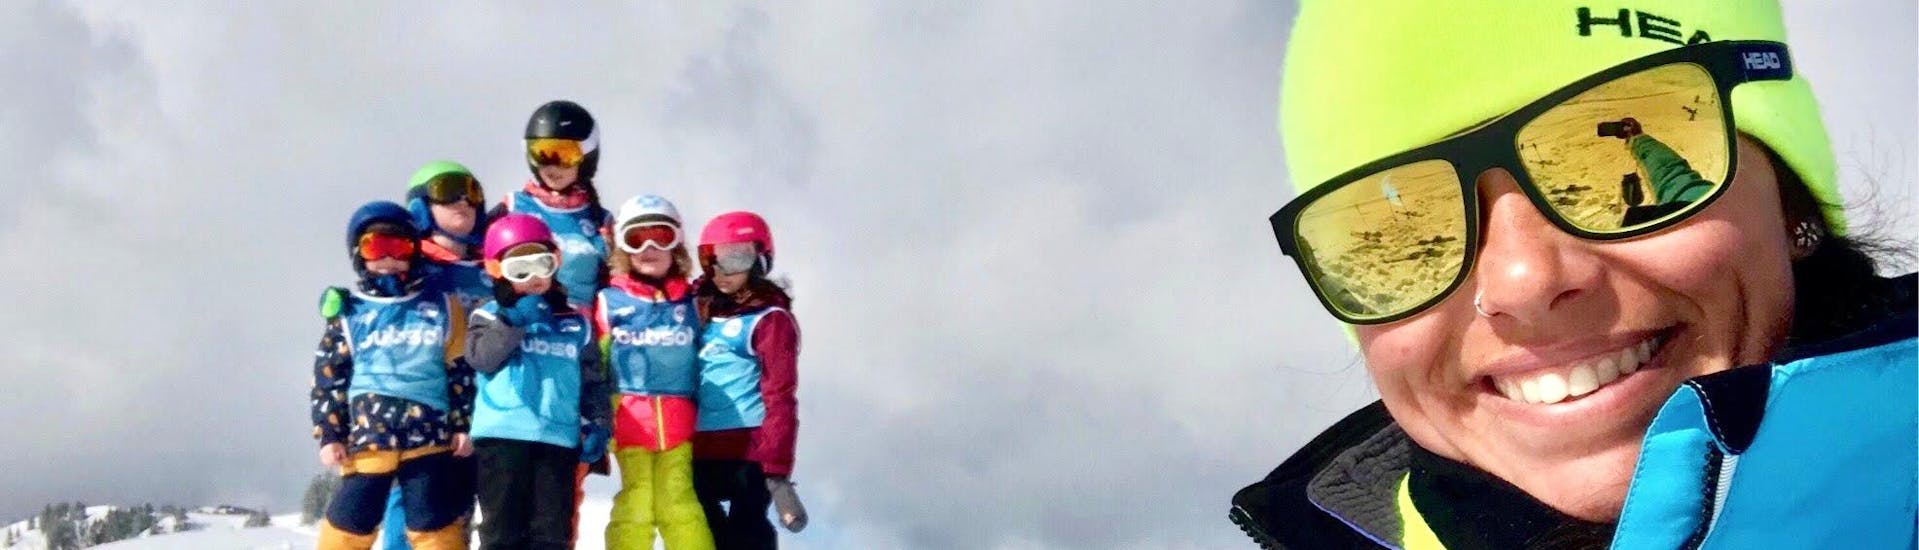 Clases de esquí para niños a partir de 5 años